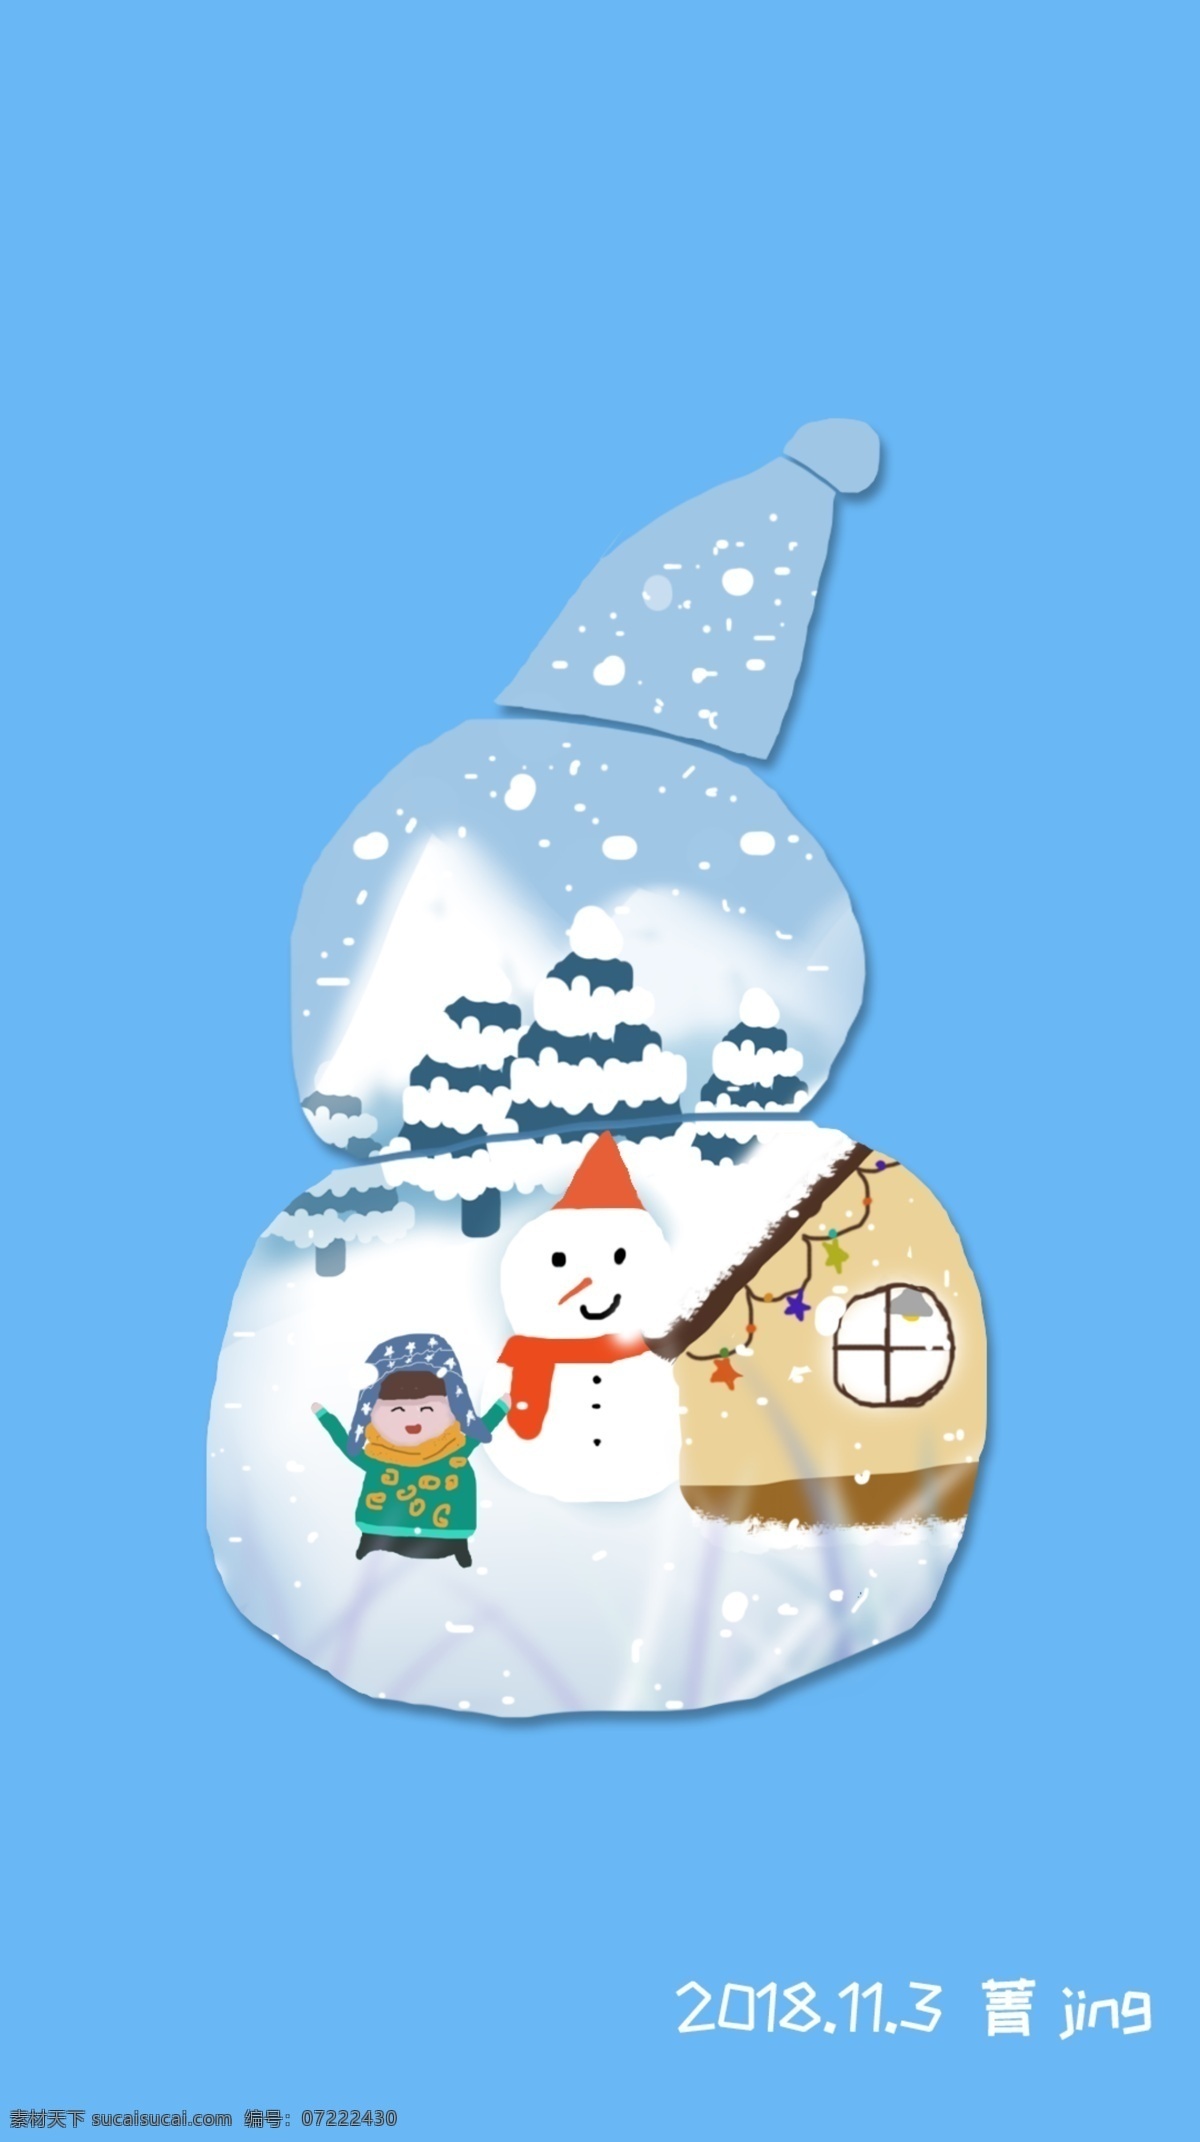 雪人 小 房子 卡通 小人 模板 下雪 小雪人